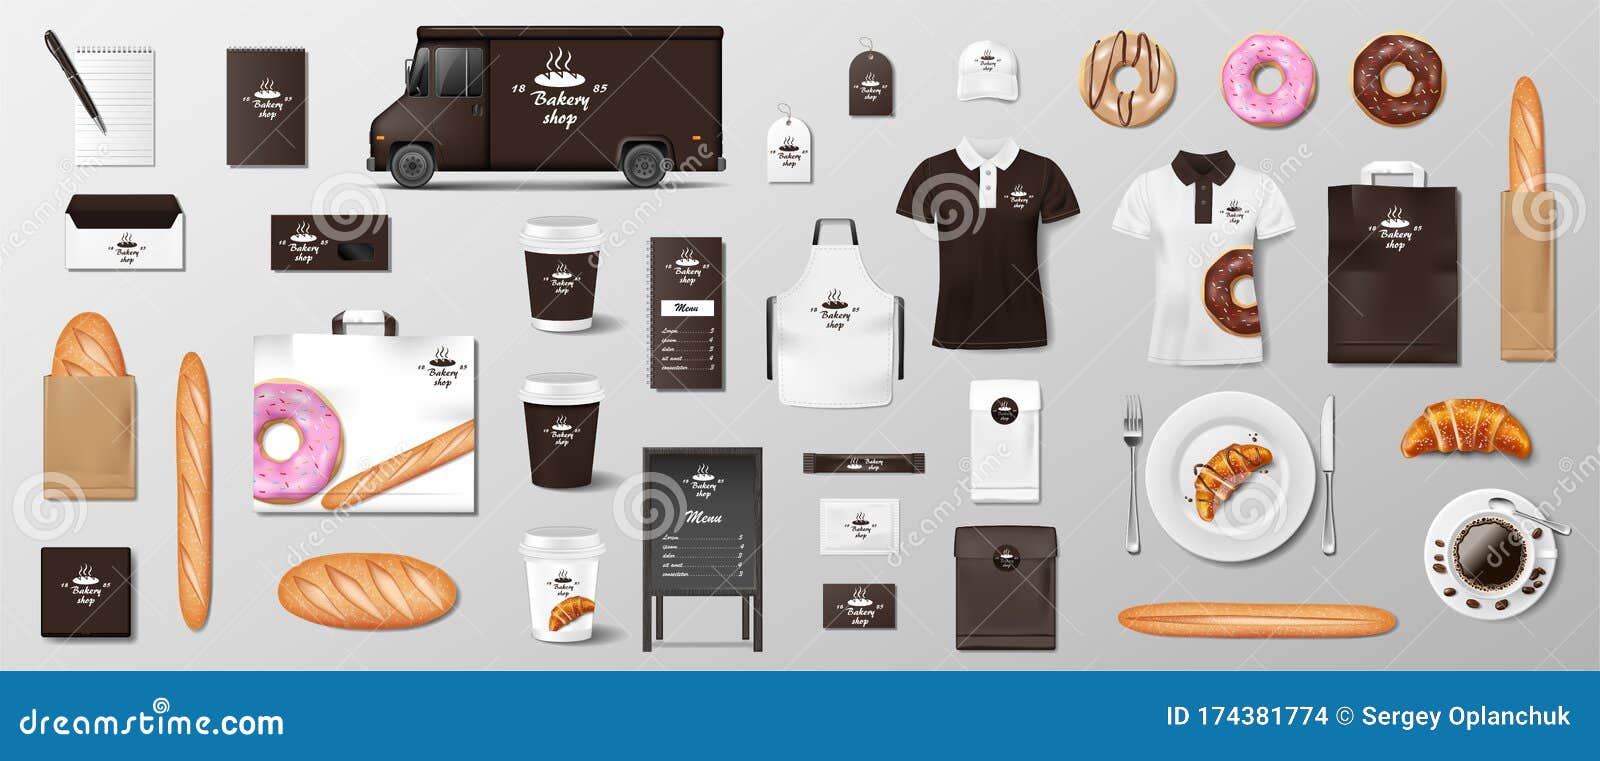 Download Mockup Set For Bakery Shop, Cafe, Restaurant Brand ...